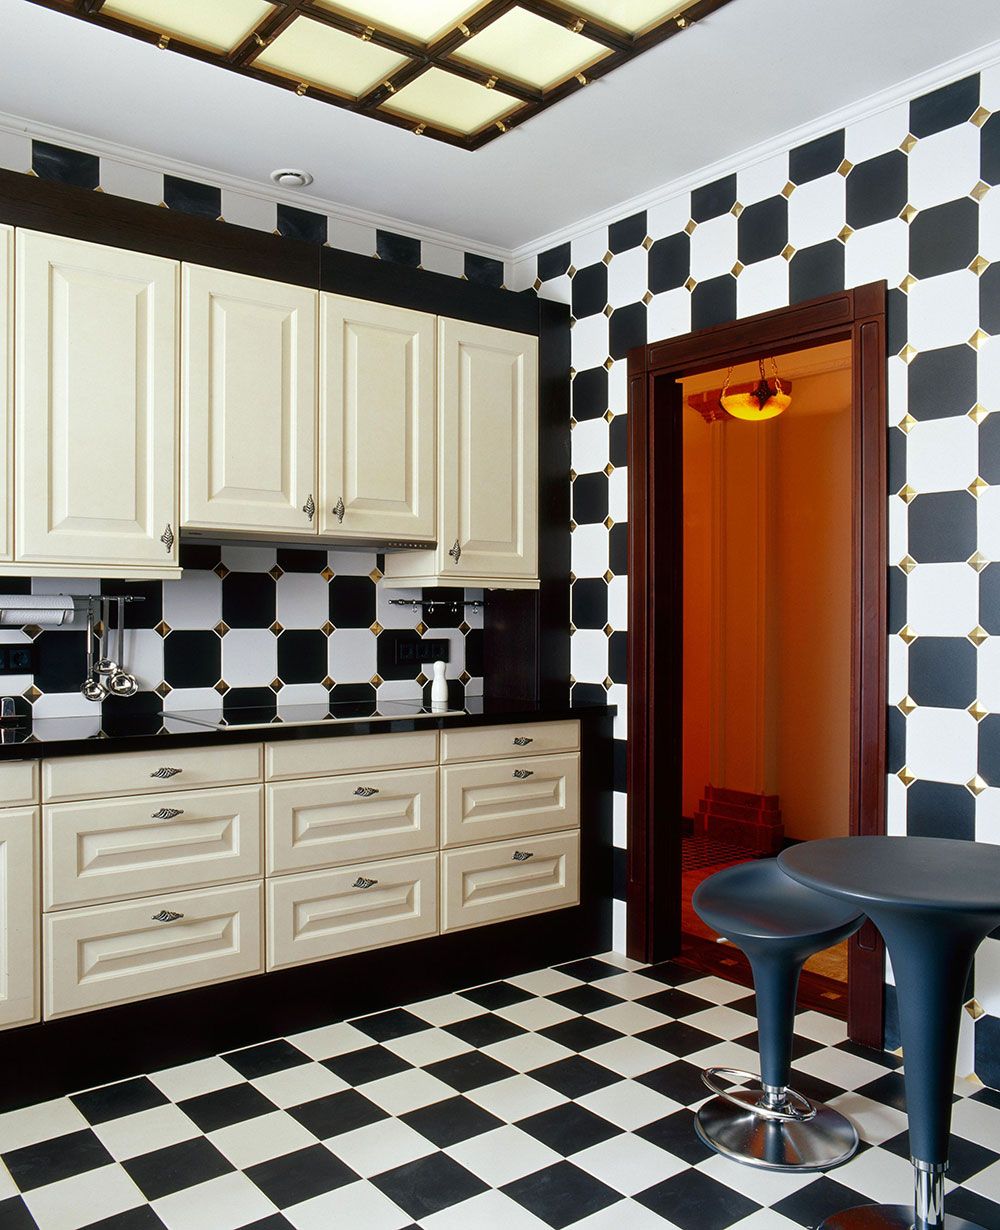 Кухня в черно-белом цвете — классика арт-деко